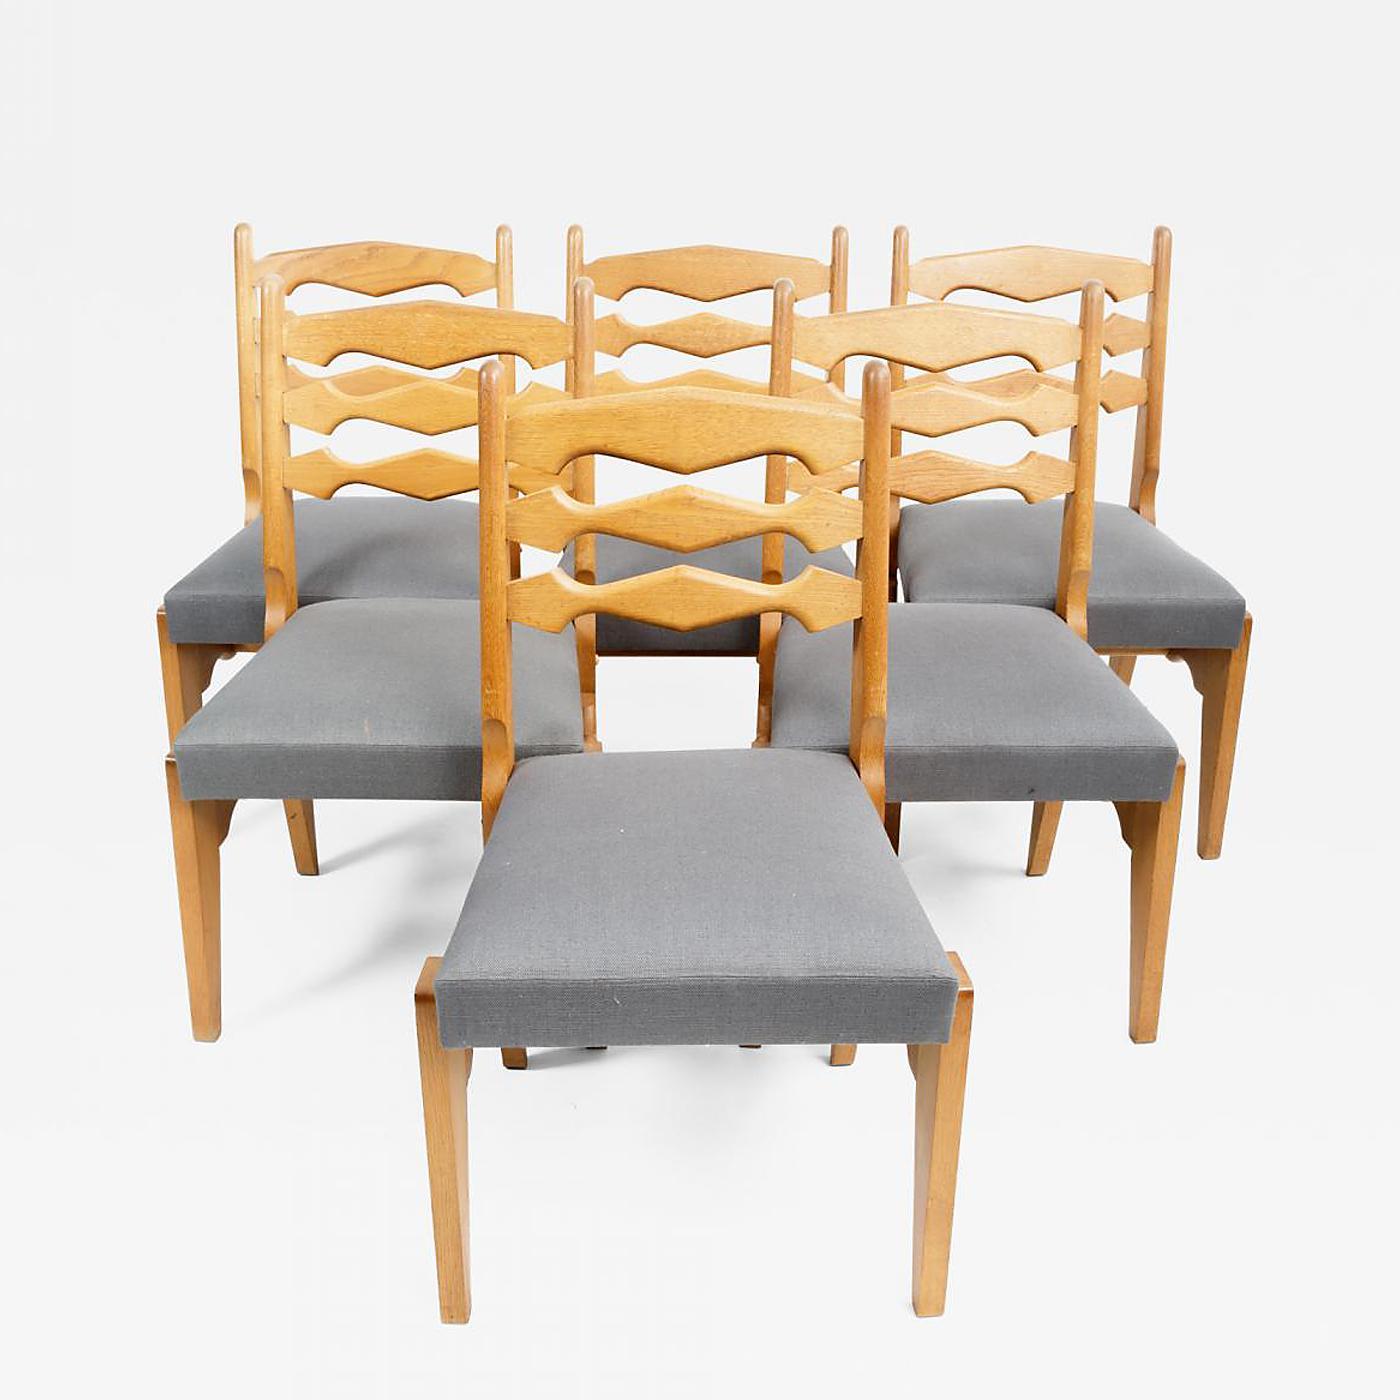 Satz von sechs Esszimmerstühlen aus Eiche und Polsterung von Guillerme et Chambron, Frankreich, um 1970.

Unglaubliches Design besteht aus massiver Eichenholzkonstruktion. Skulpturale Rahmen und Rückenlehnen mit kantigen Beinen und neuer Polsterung